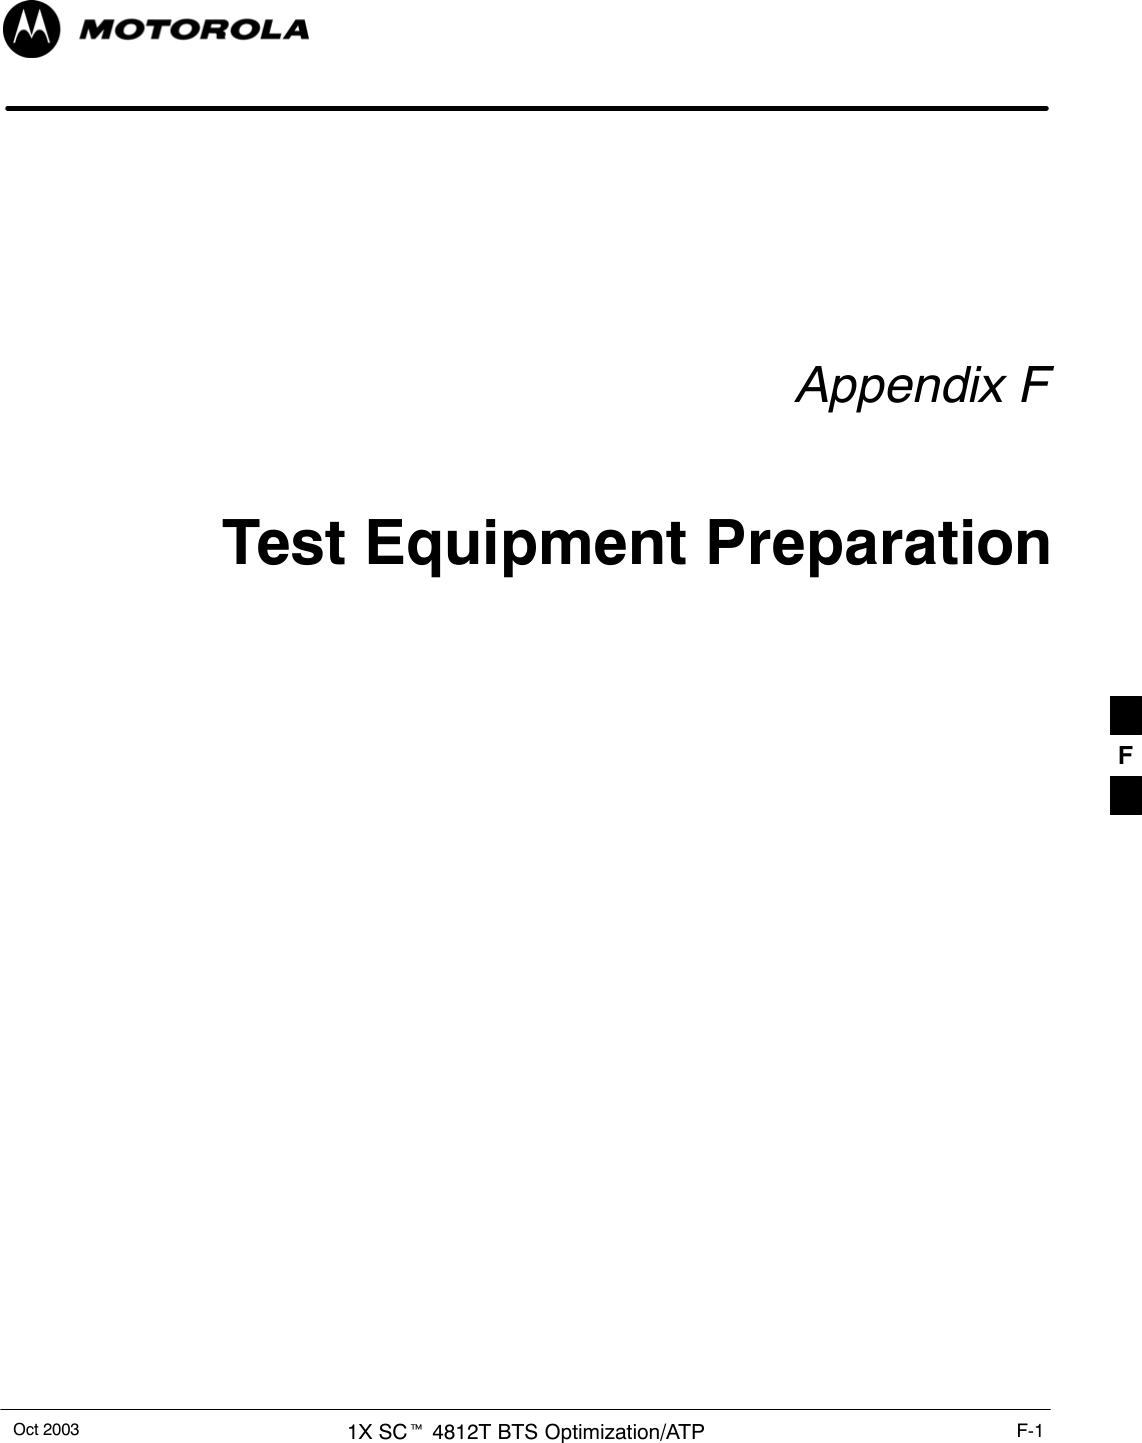 Oct 2003 1X SCt 4812T BTS Optimization/ATP F-1Appendix FTest Equipment PreparationF